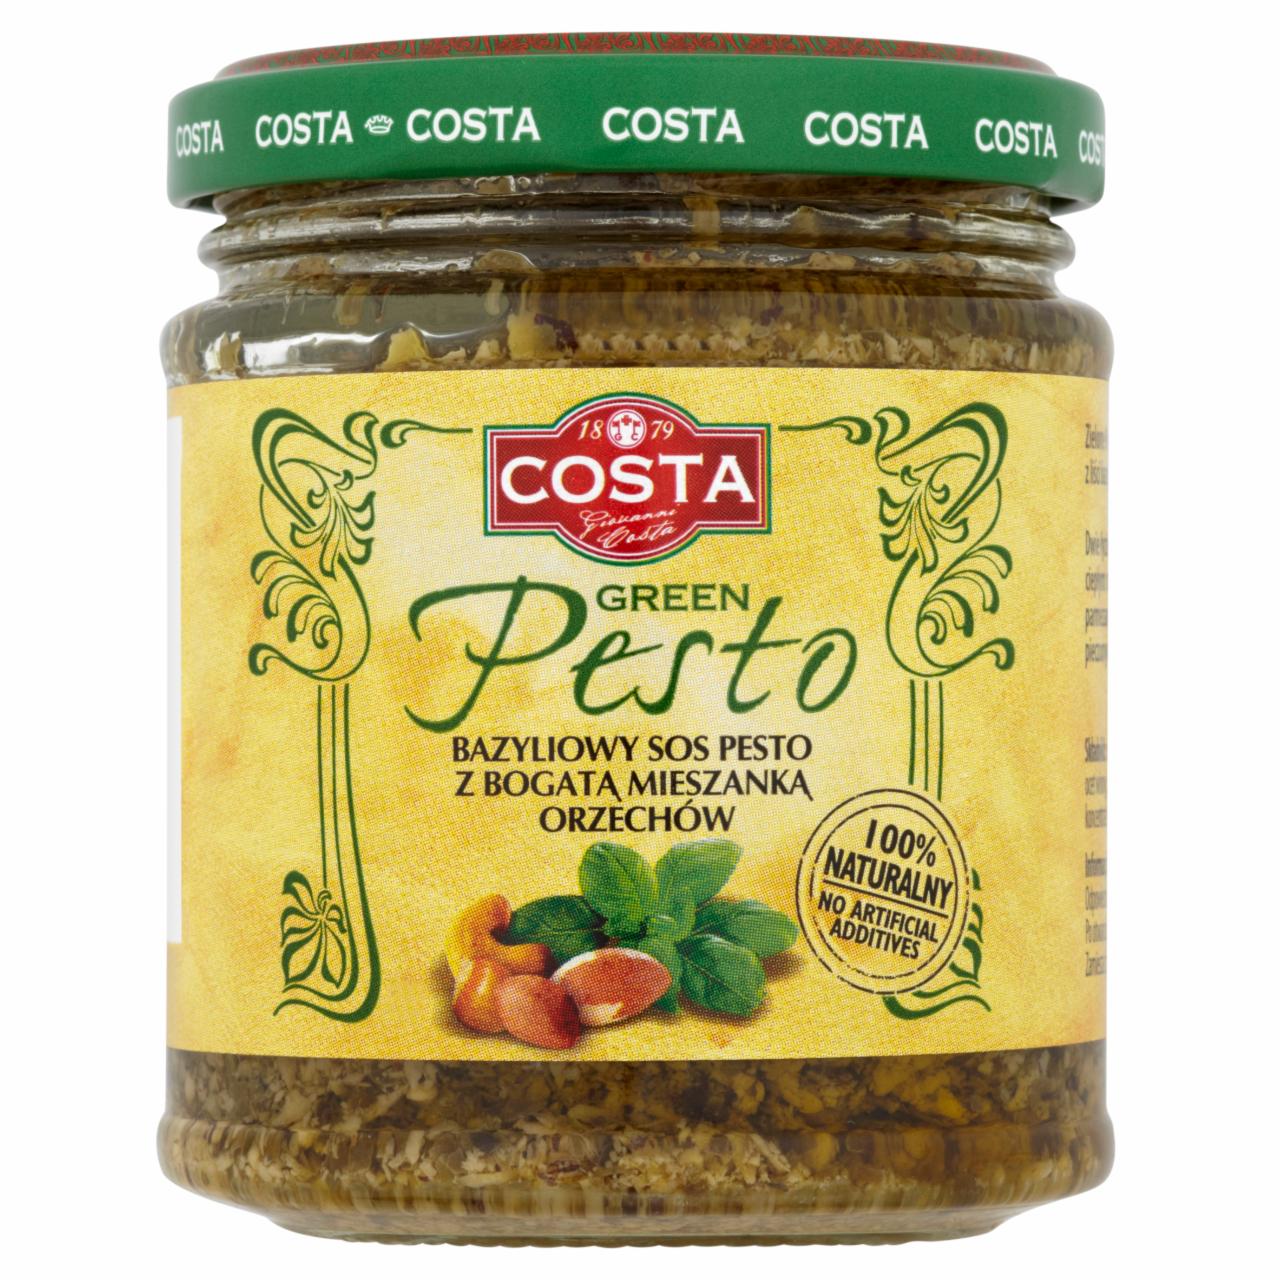 Zdjęcia - Costa Green Pesto Bazyliowy sos pesto z bogatą mieszanką orzechów 165 g